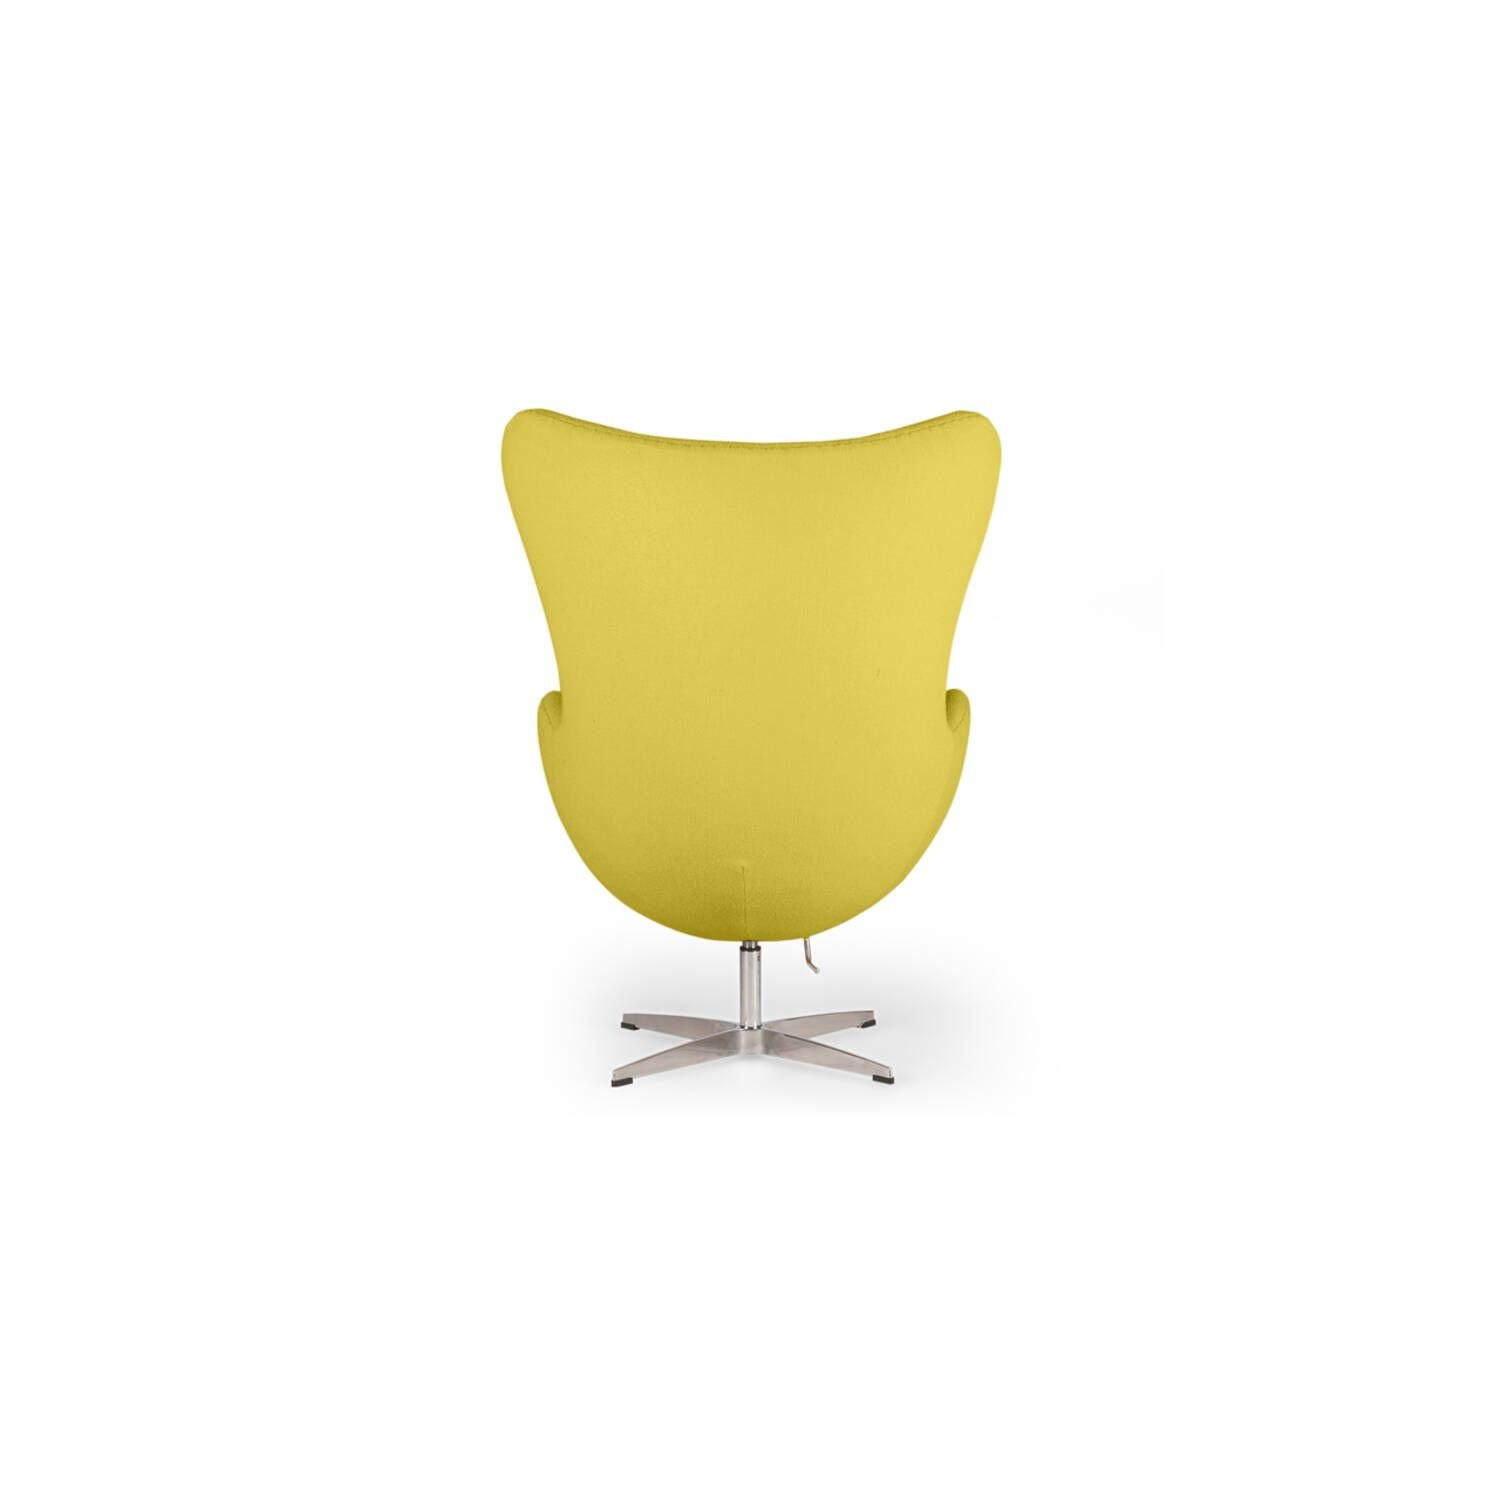 Горчичное кресло. Кресло икеа горчичное. Желтое кресло икеа. Кресло Egg Chair желтое. Apollo Yellow кресло.